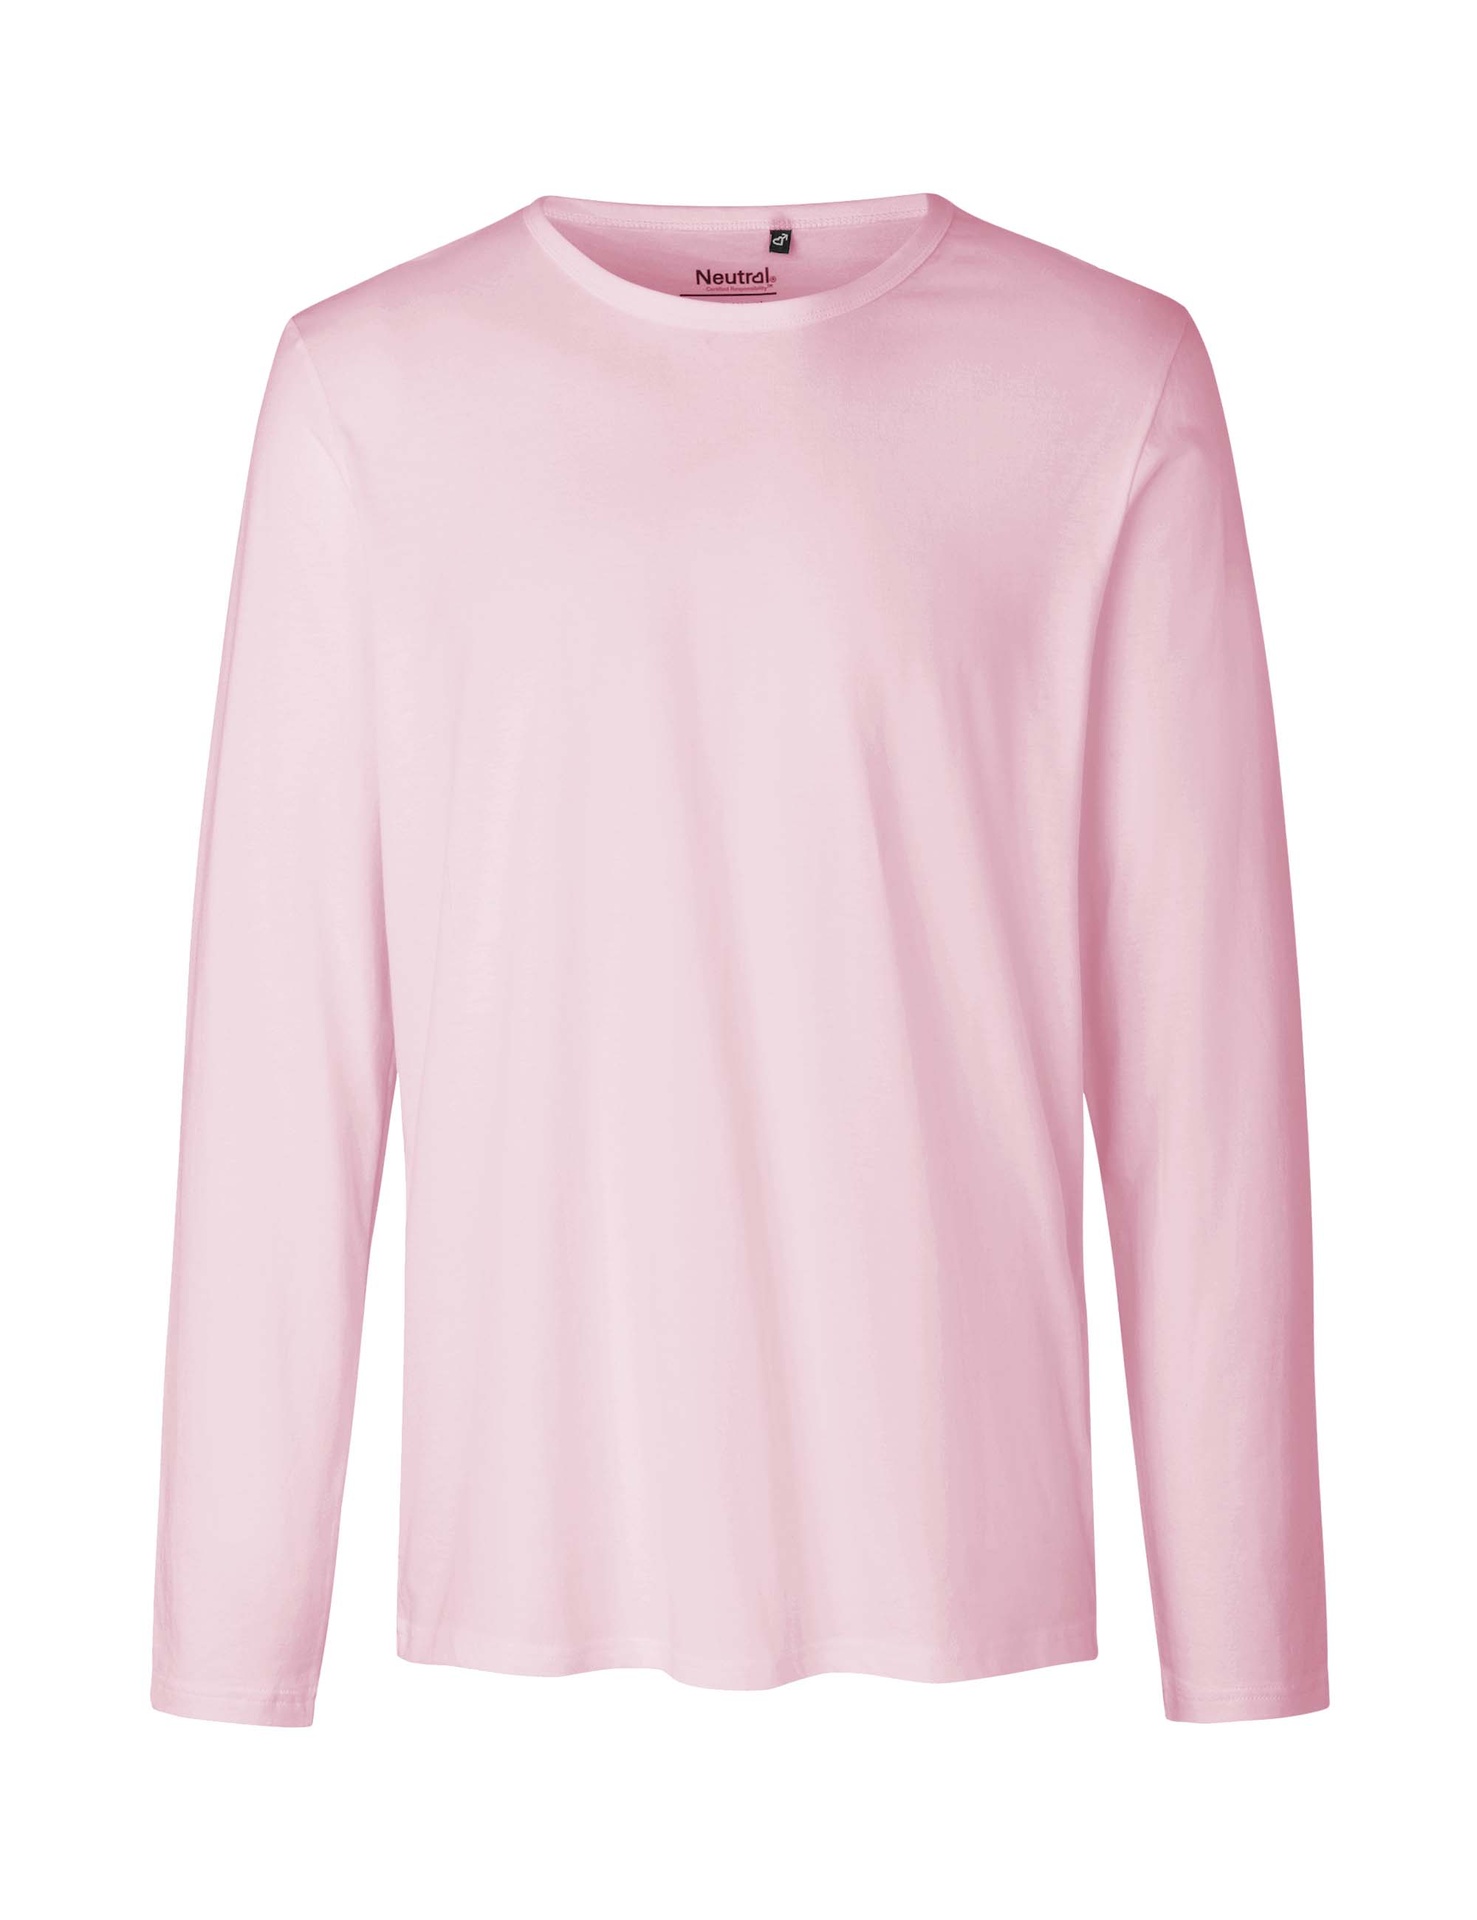 [PR/02393] Mens Long Sleeve T-Shirt (Light Pink 20, M)